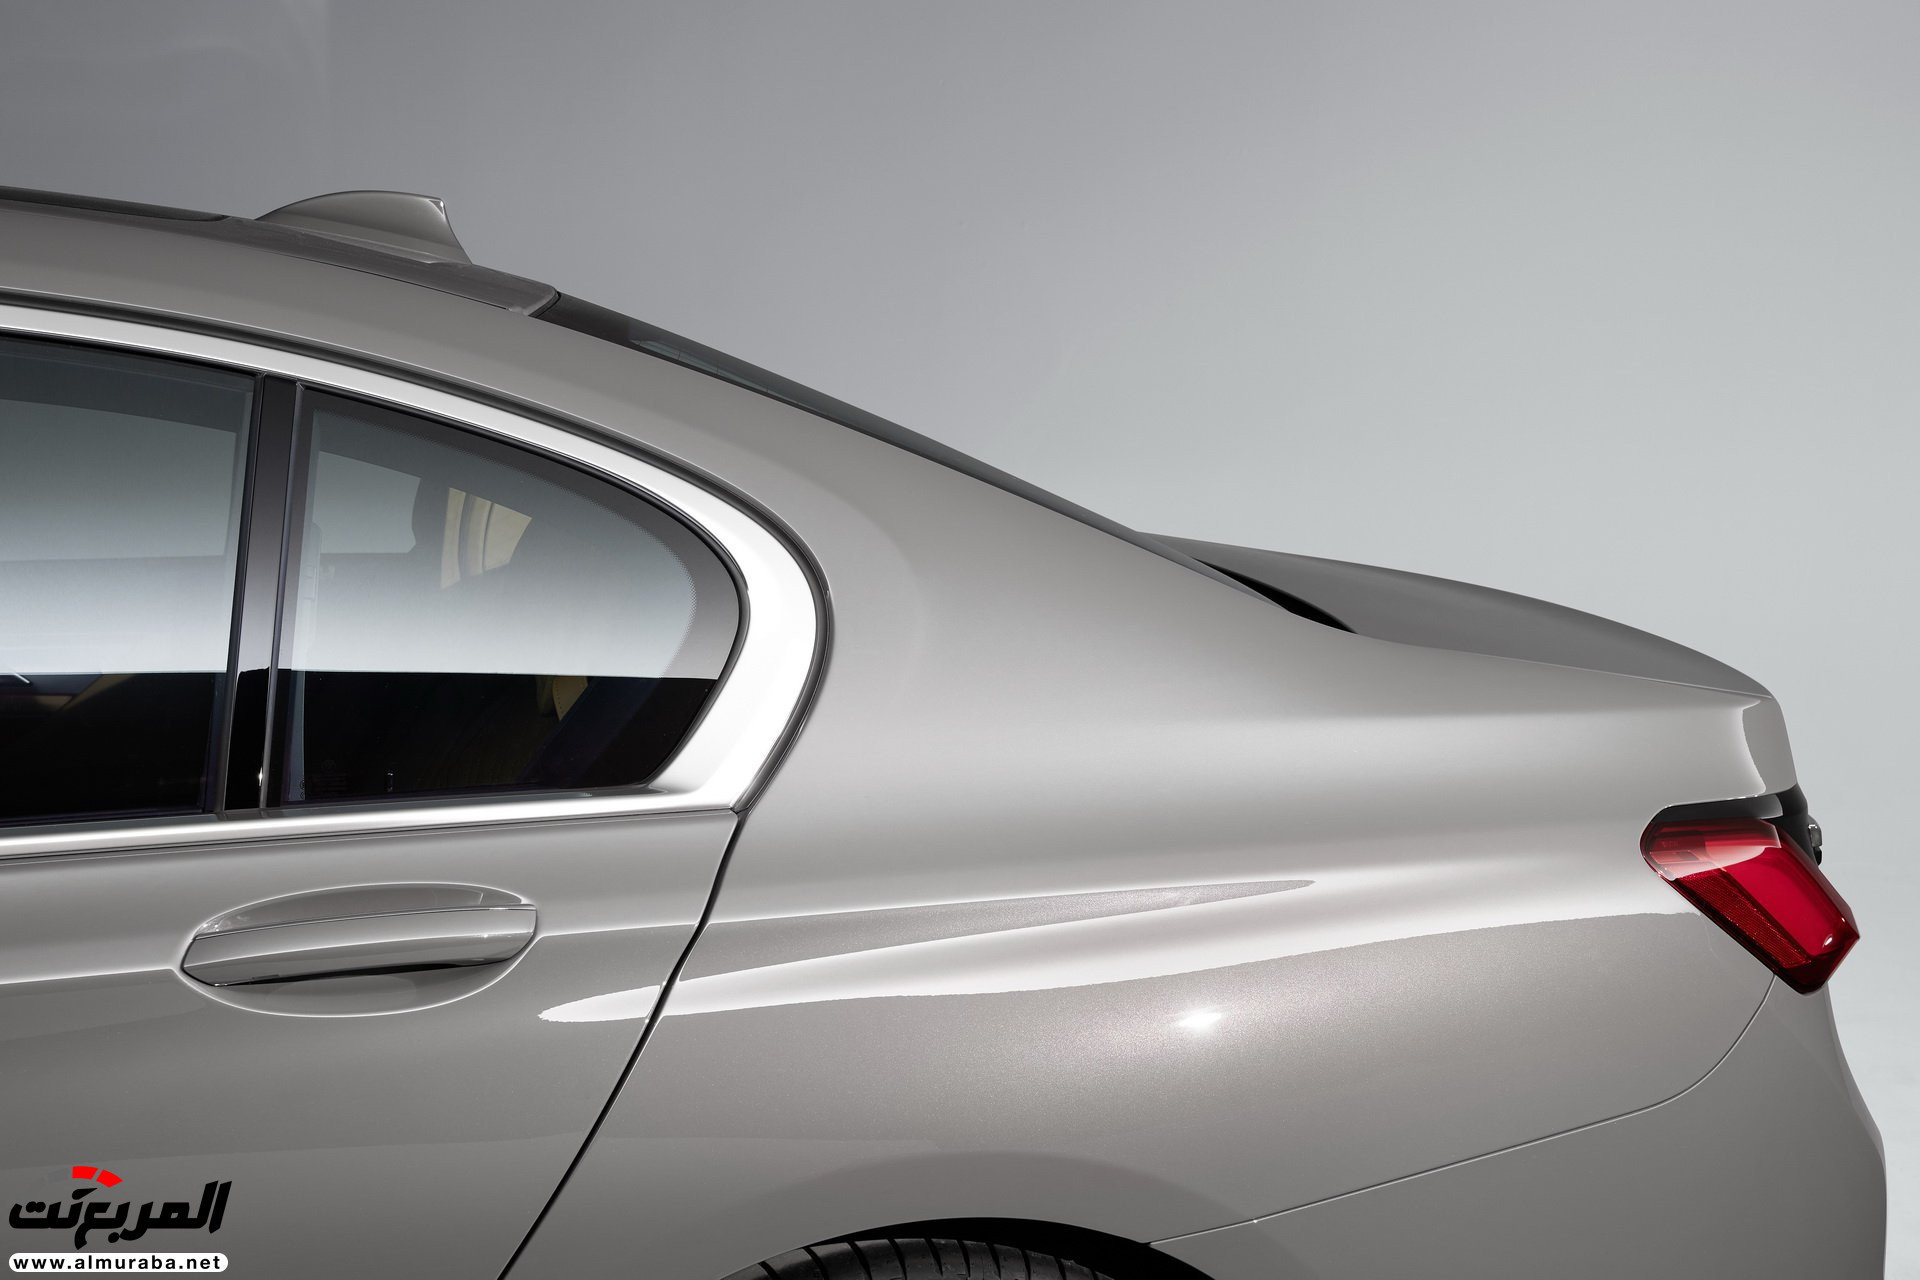 بي ام دبليو الفئة السابعة 2020 المحدثة تكشف نفسها رسمياً "صور ومواصفات" BMW 7 Series 247